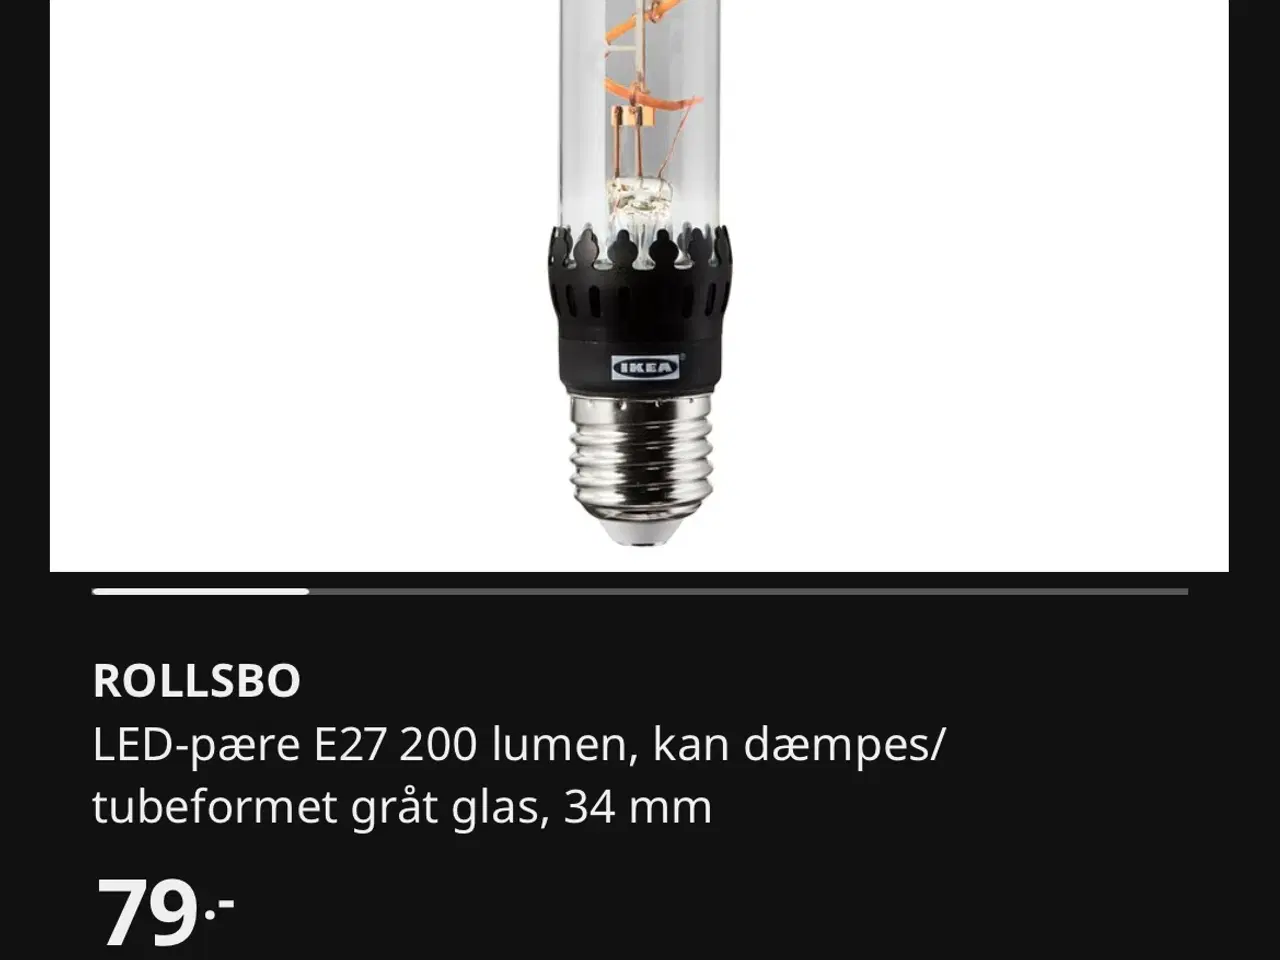 Billede 3 - Loftslamper med LED-pære